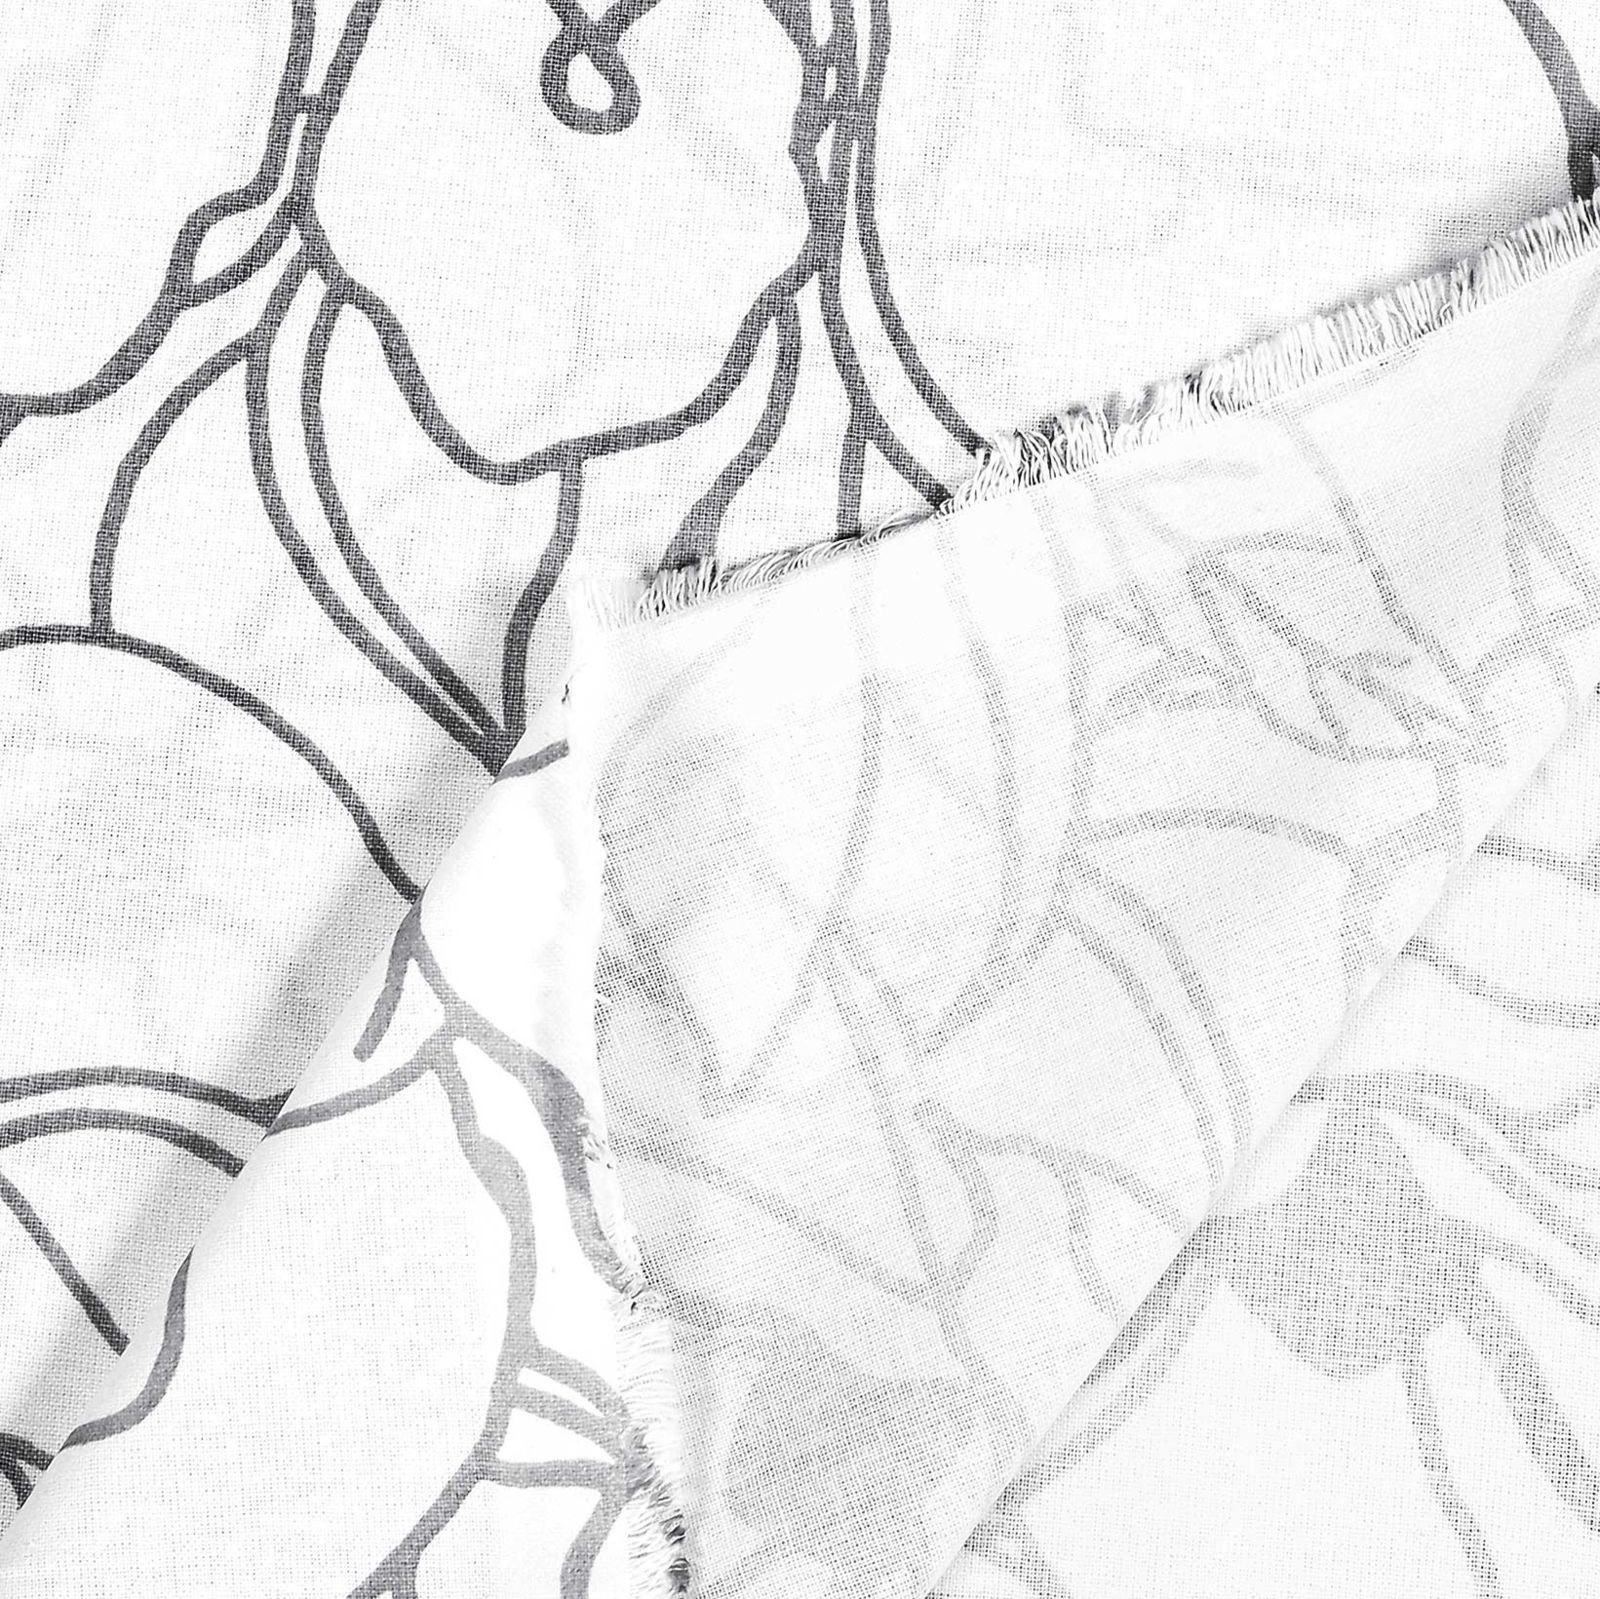 Obrus z płótna bawełnianego - ciemnoszare kwiaty na białym